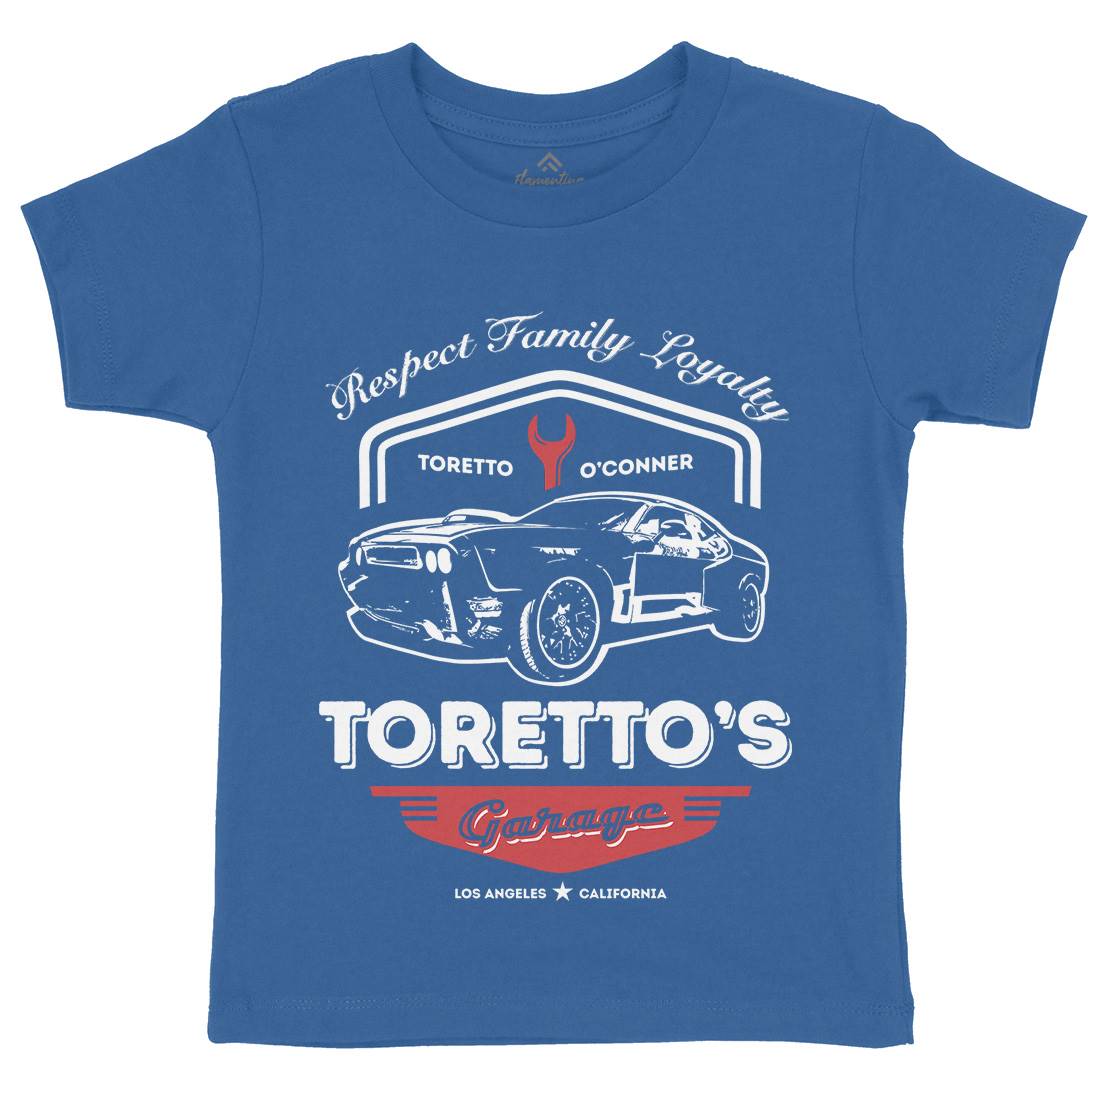 Torettos Garage Kids Organic Crew Neck T-Shirt Cars D240